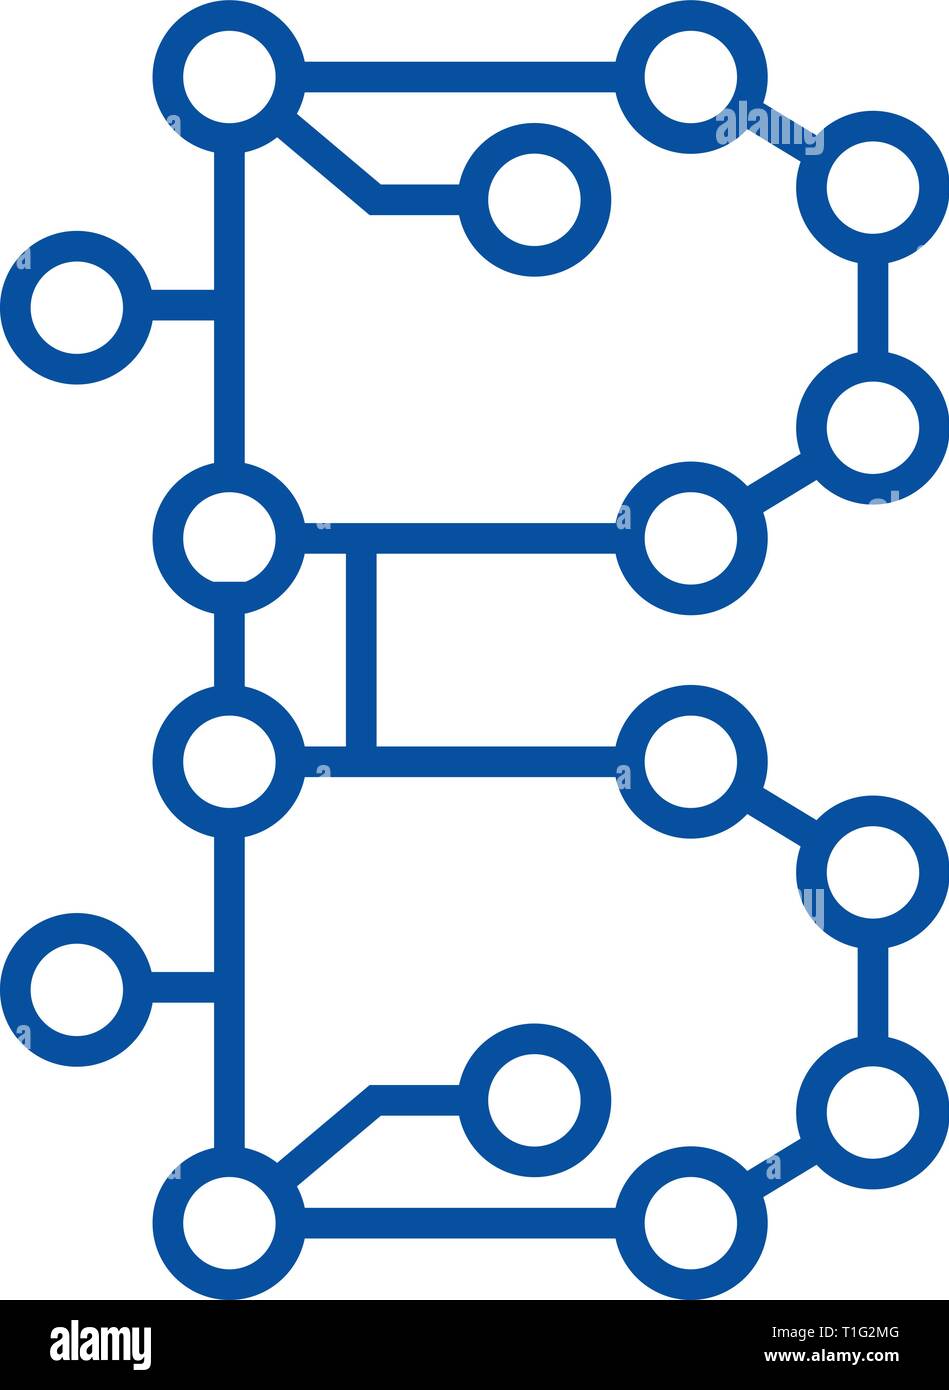 Tecnología Blockchain,circuito icono línea concepto. Tecnología Blockchain,circuito vector plana símbolo, signo, esbozo de la ilustración. Ilustración del Vector